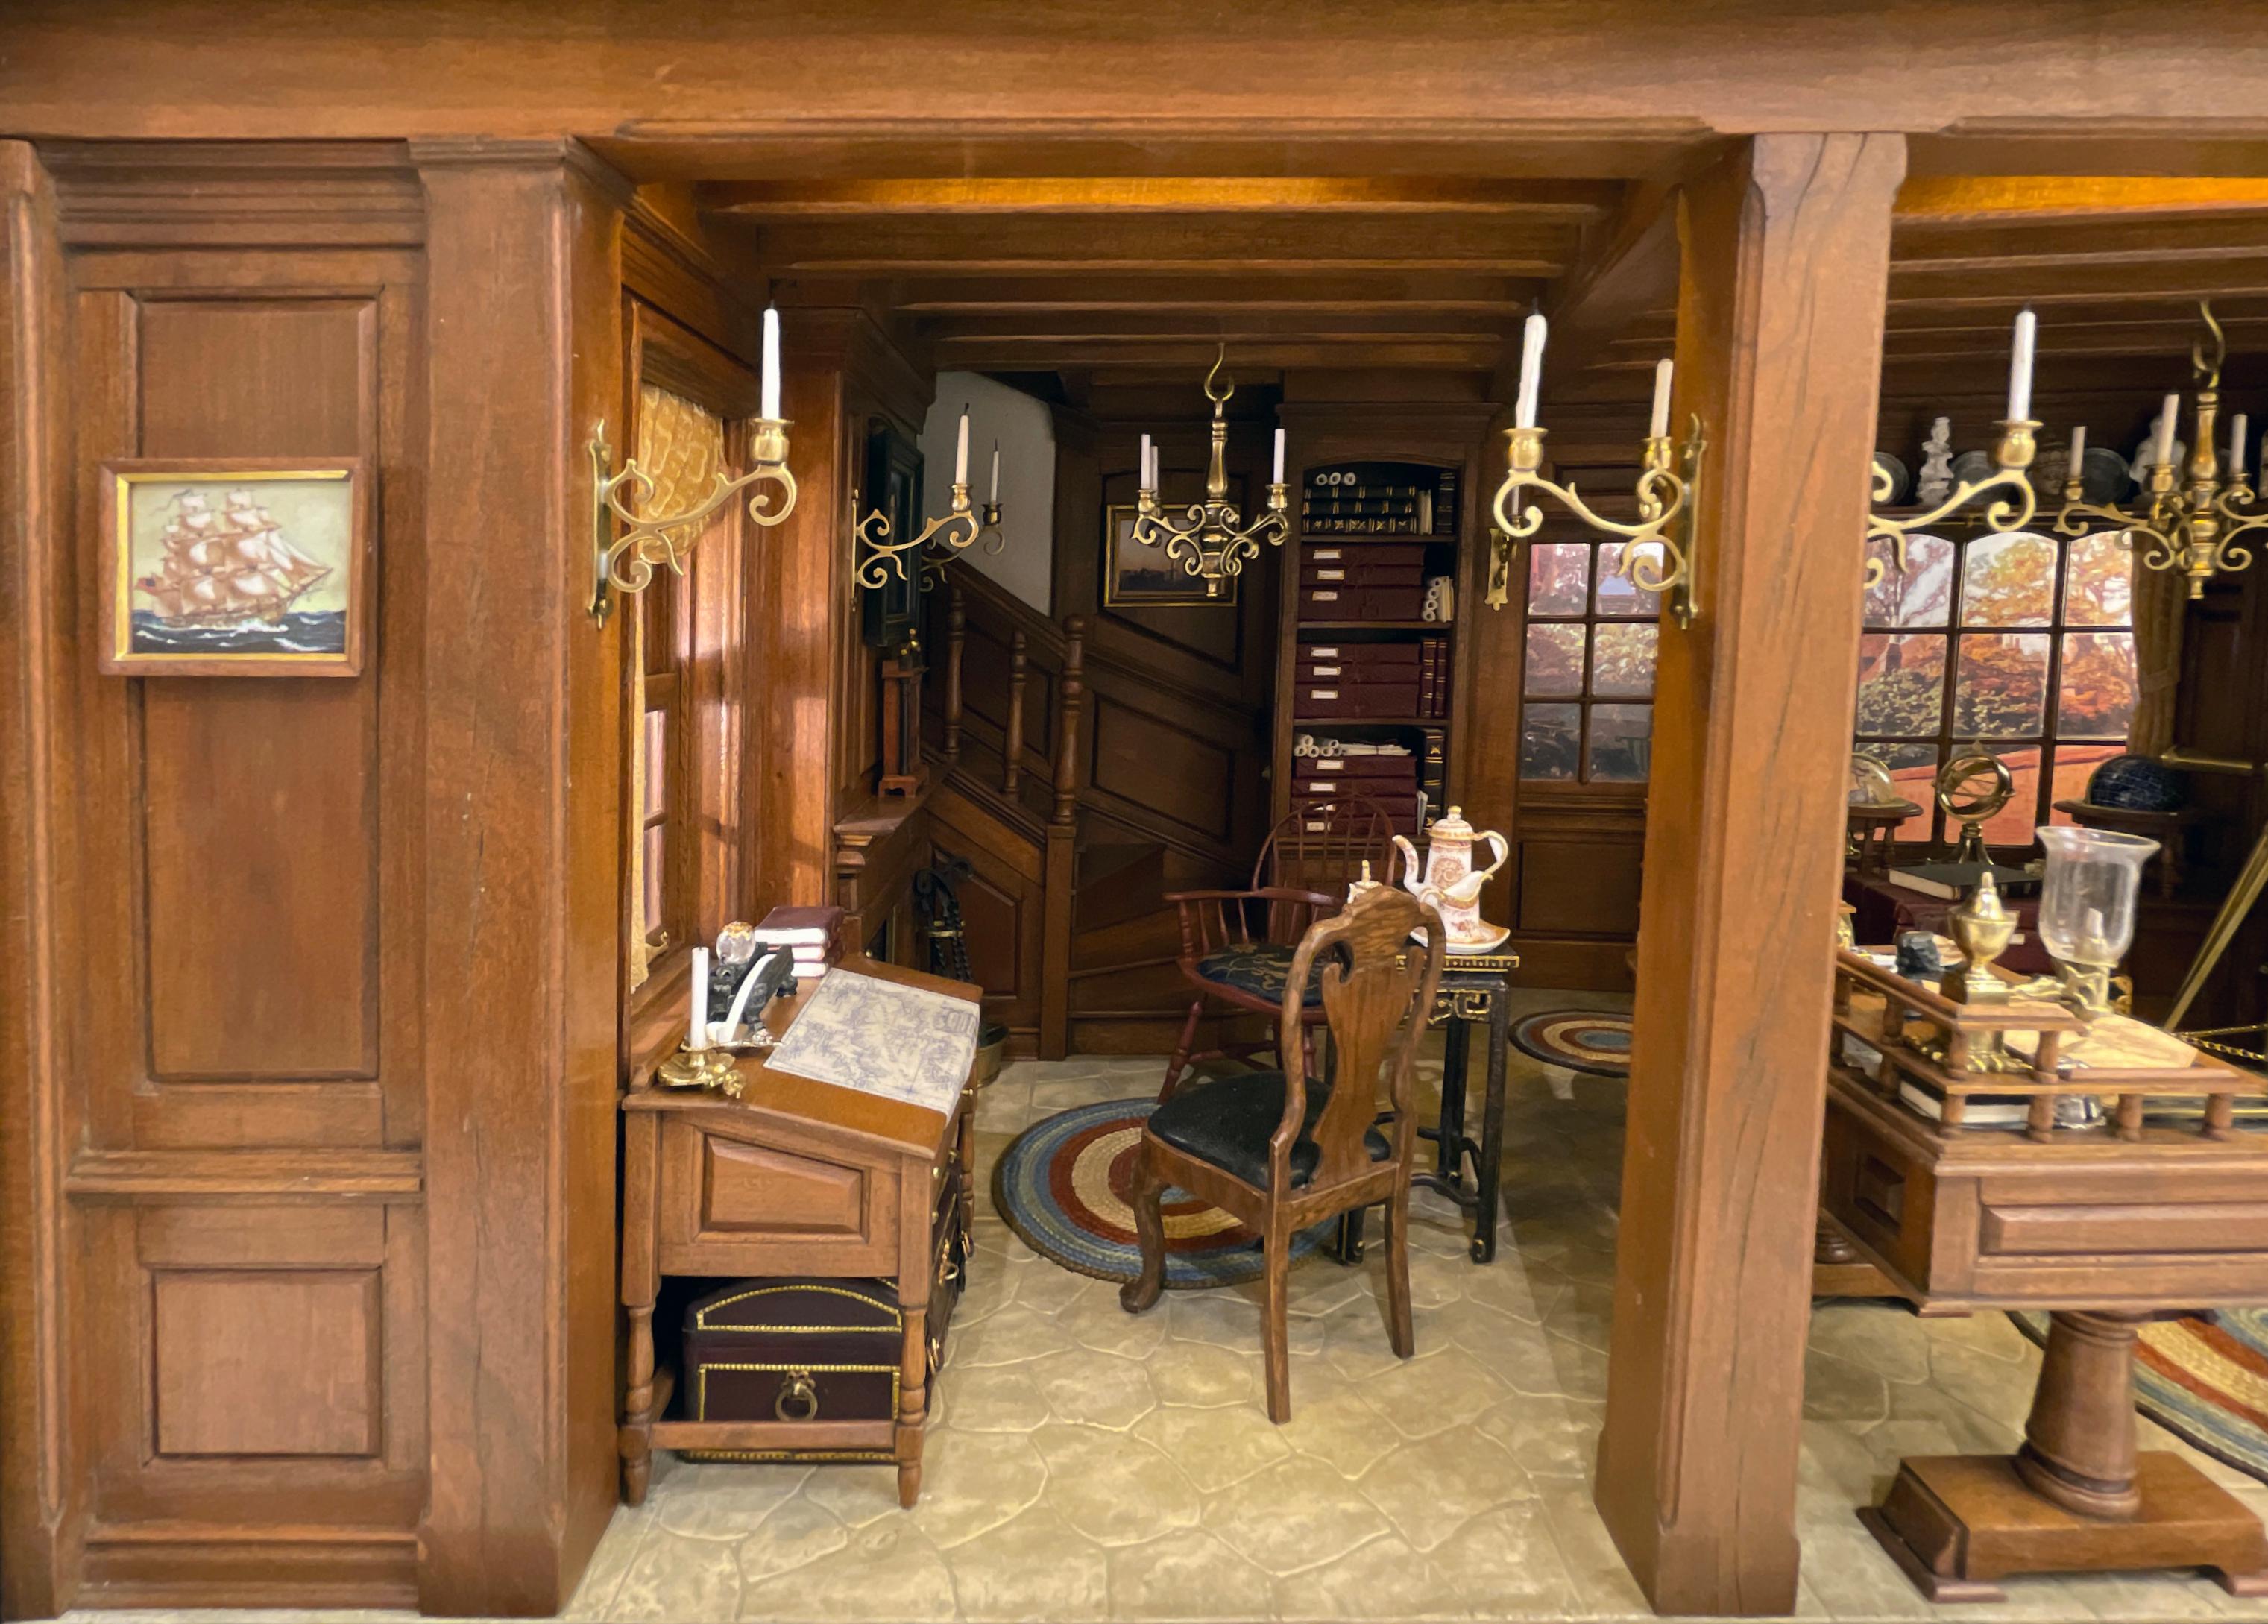 Büro eines Neuengland-Kartografen aus dem 18. Jahrhundert - Kupjack Studios Miniature Room (Braun), Still-Life Sculpture, von Henry 